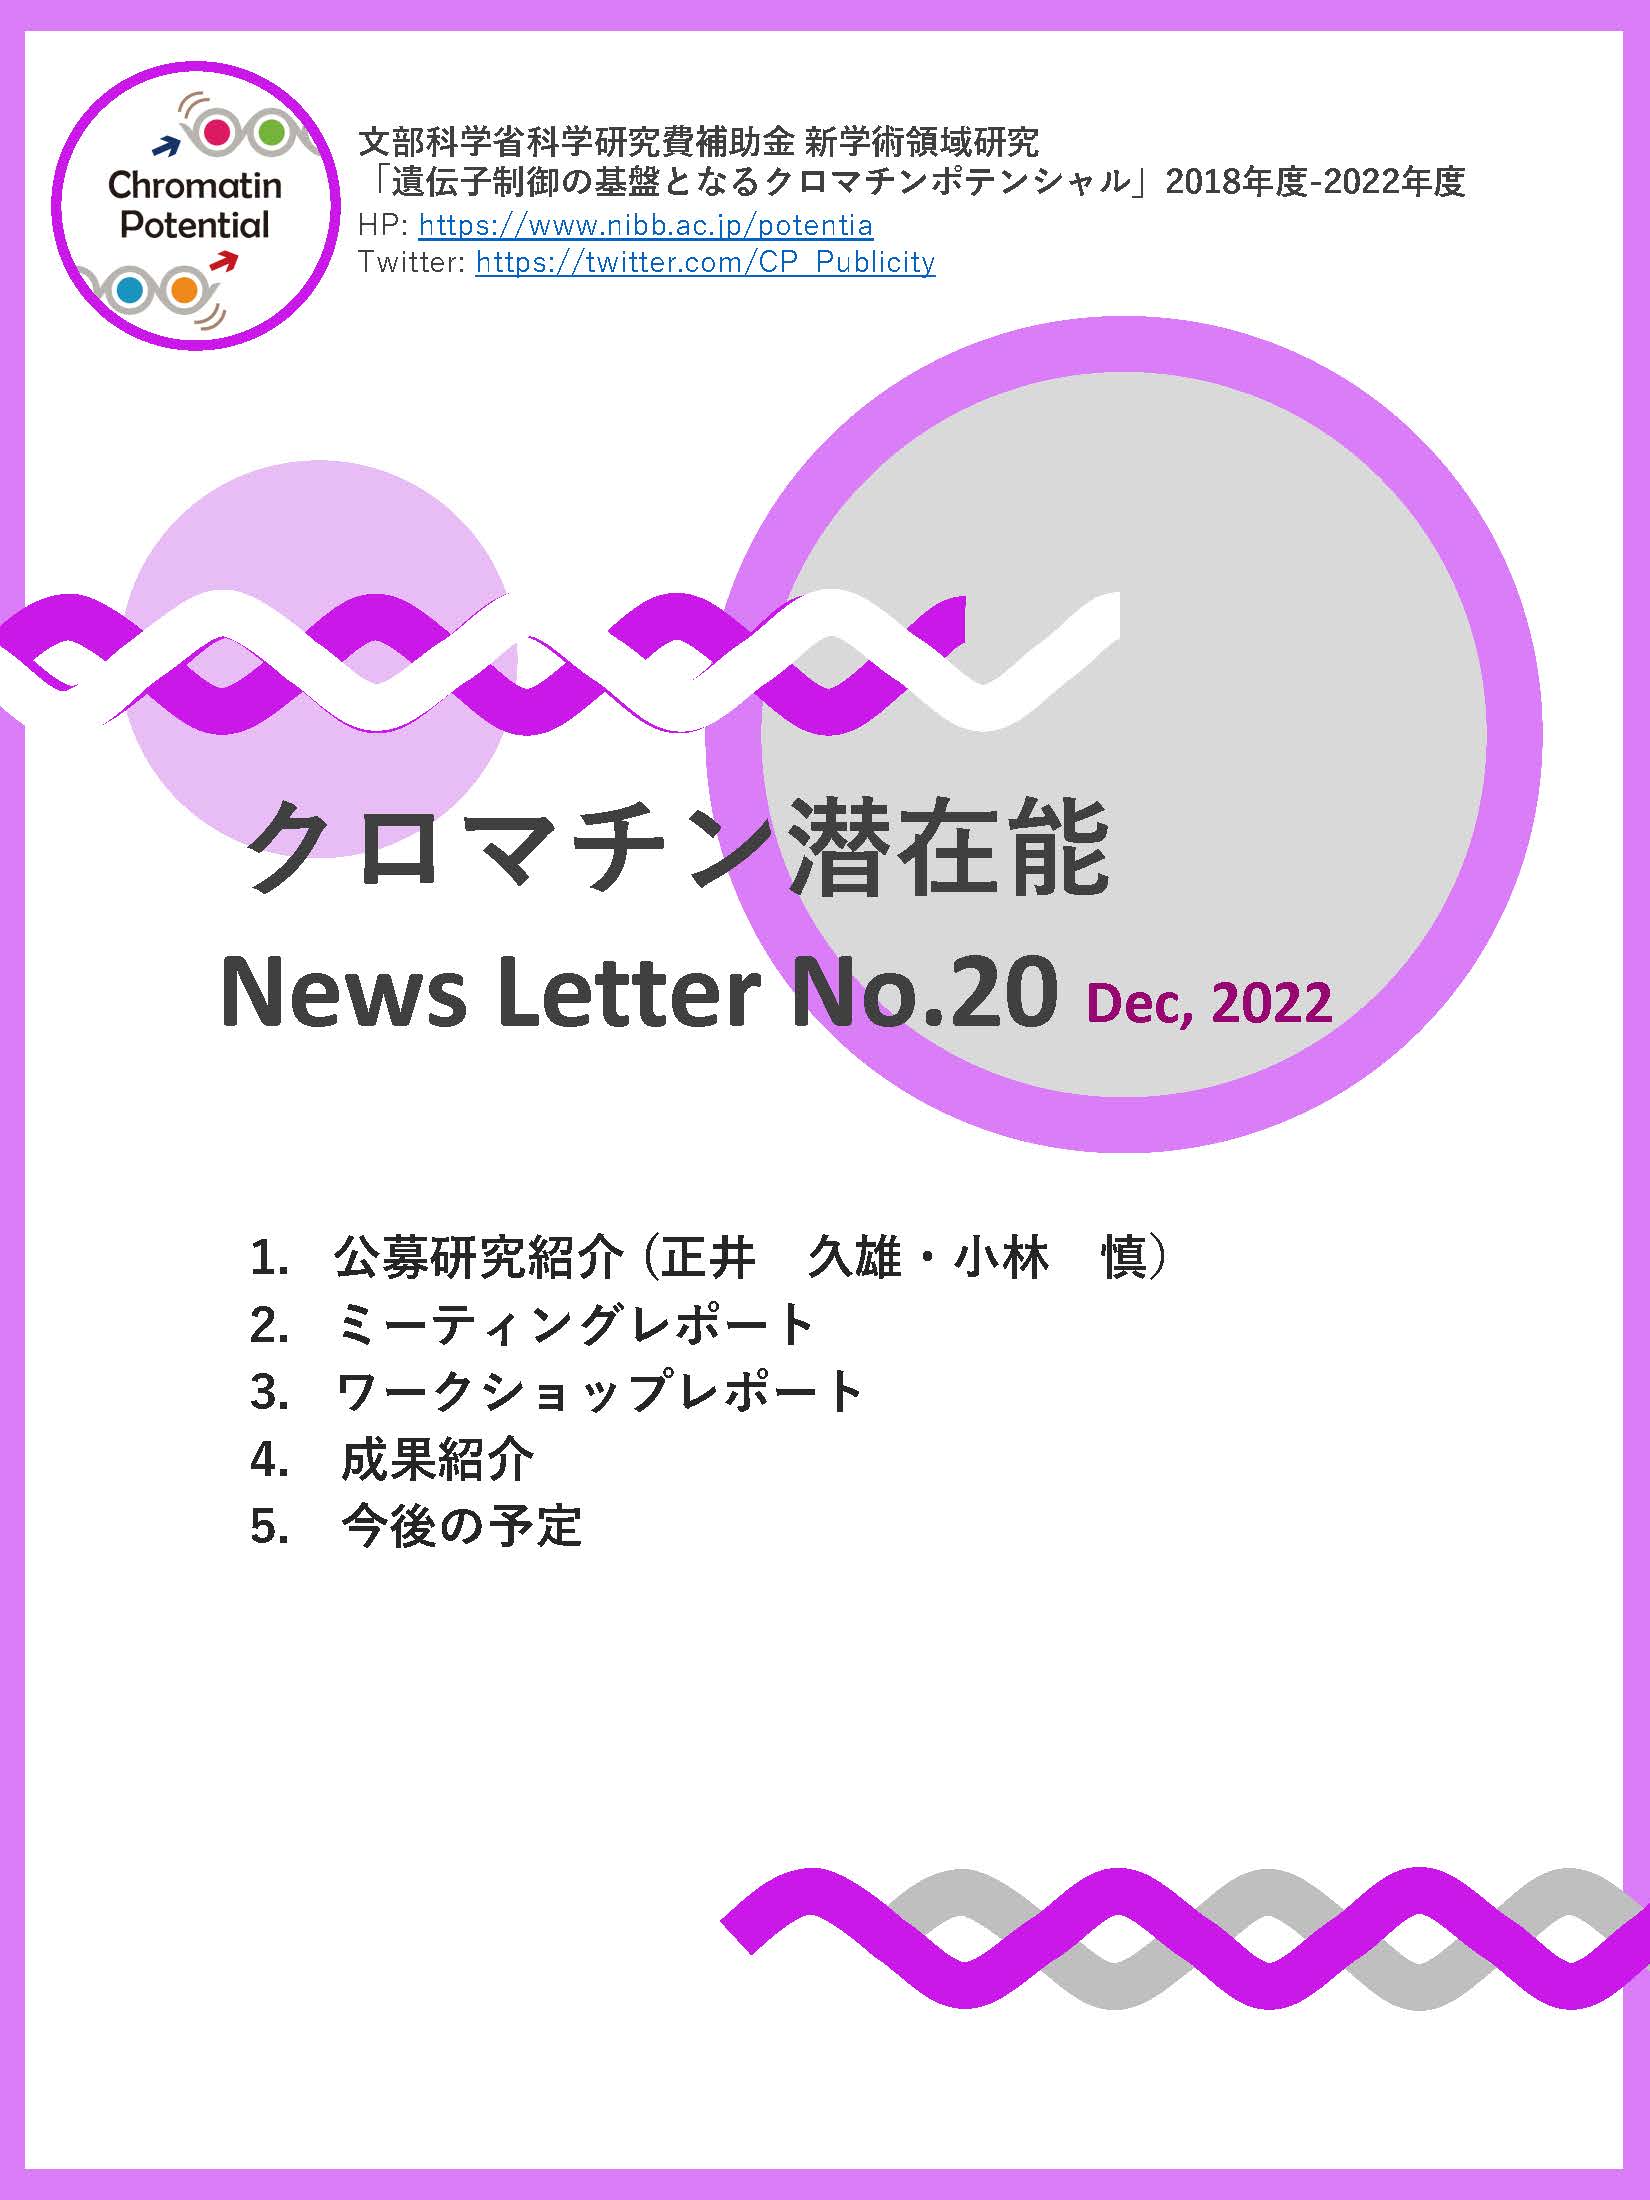 NewsLetter20